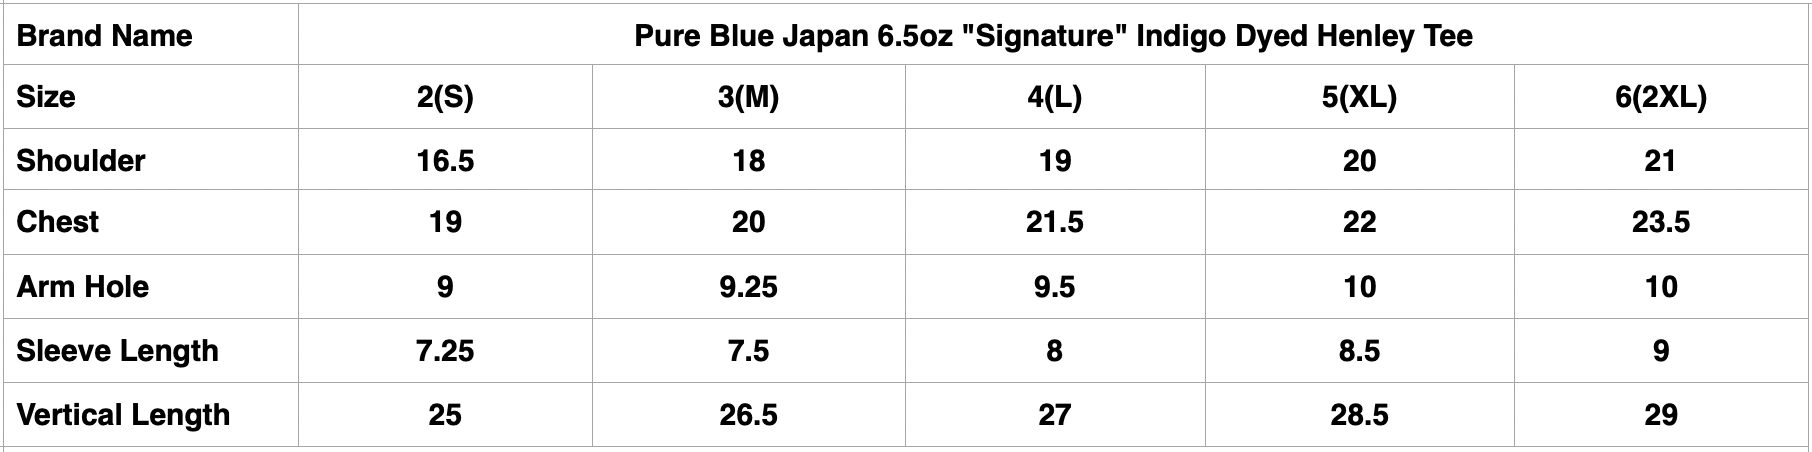 Pure Blue Japan 6.5oz "Signature" Indigo Dyed Henley Tee (Icy Indigo)